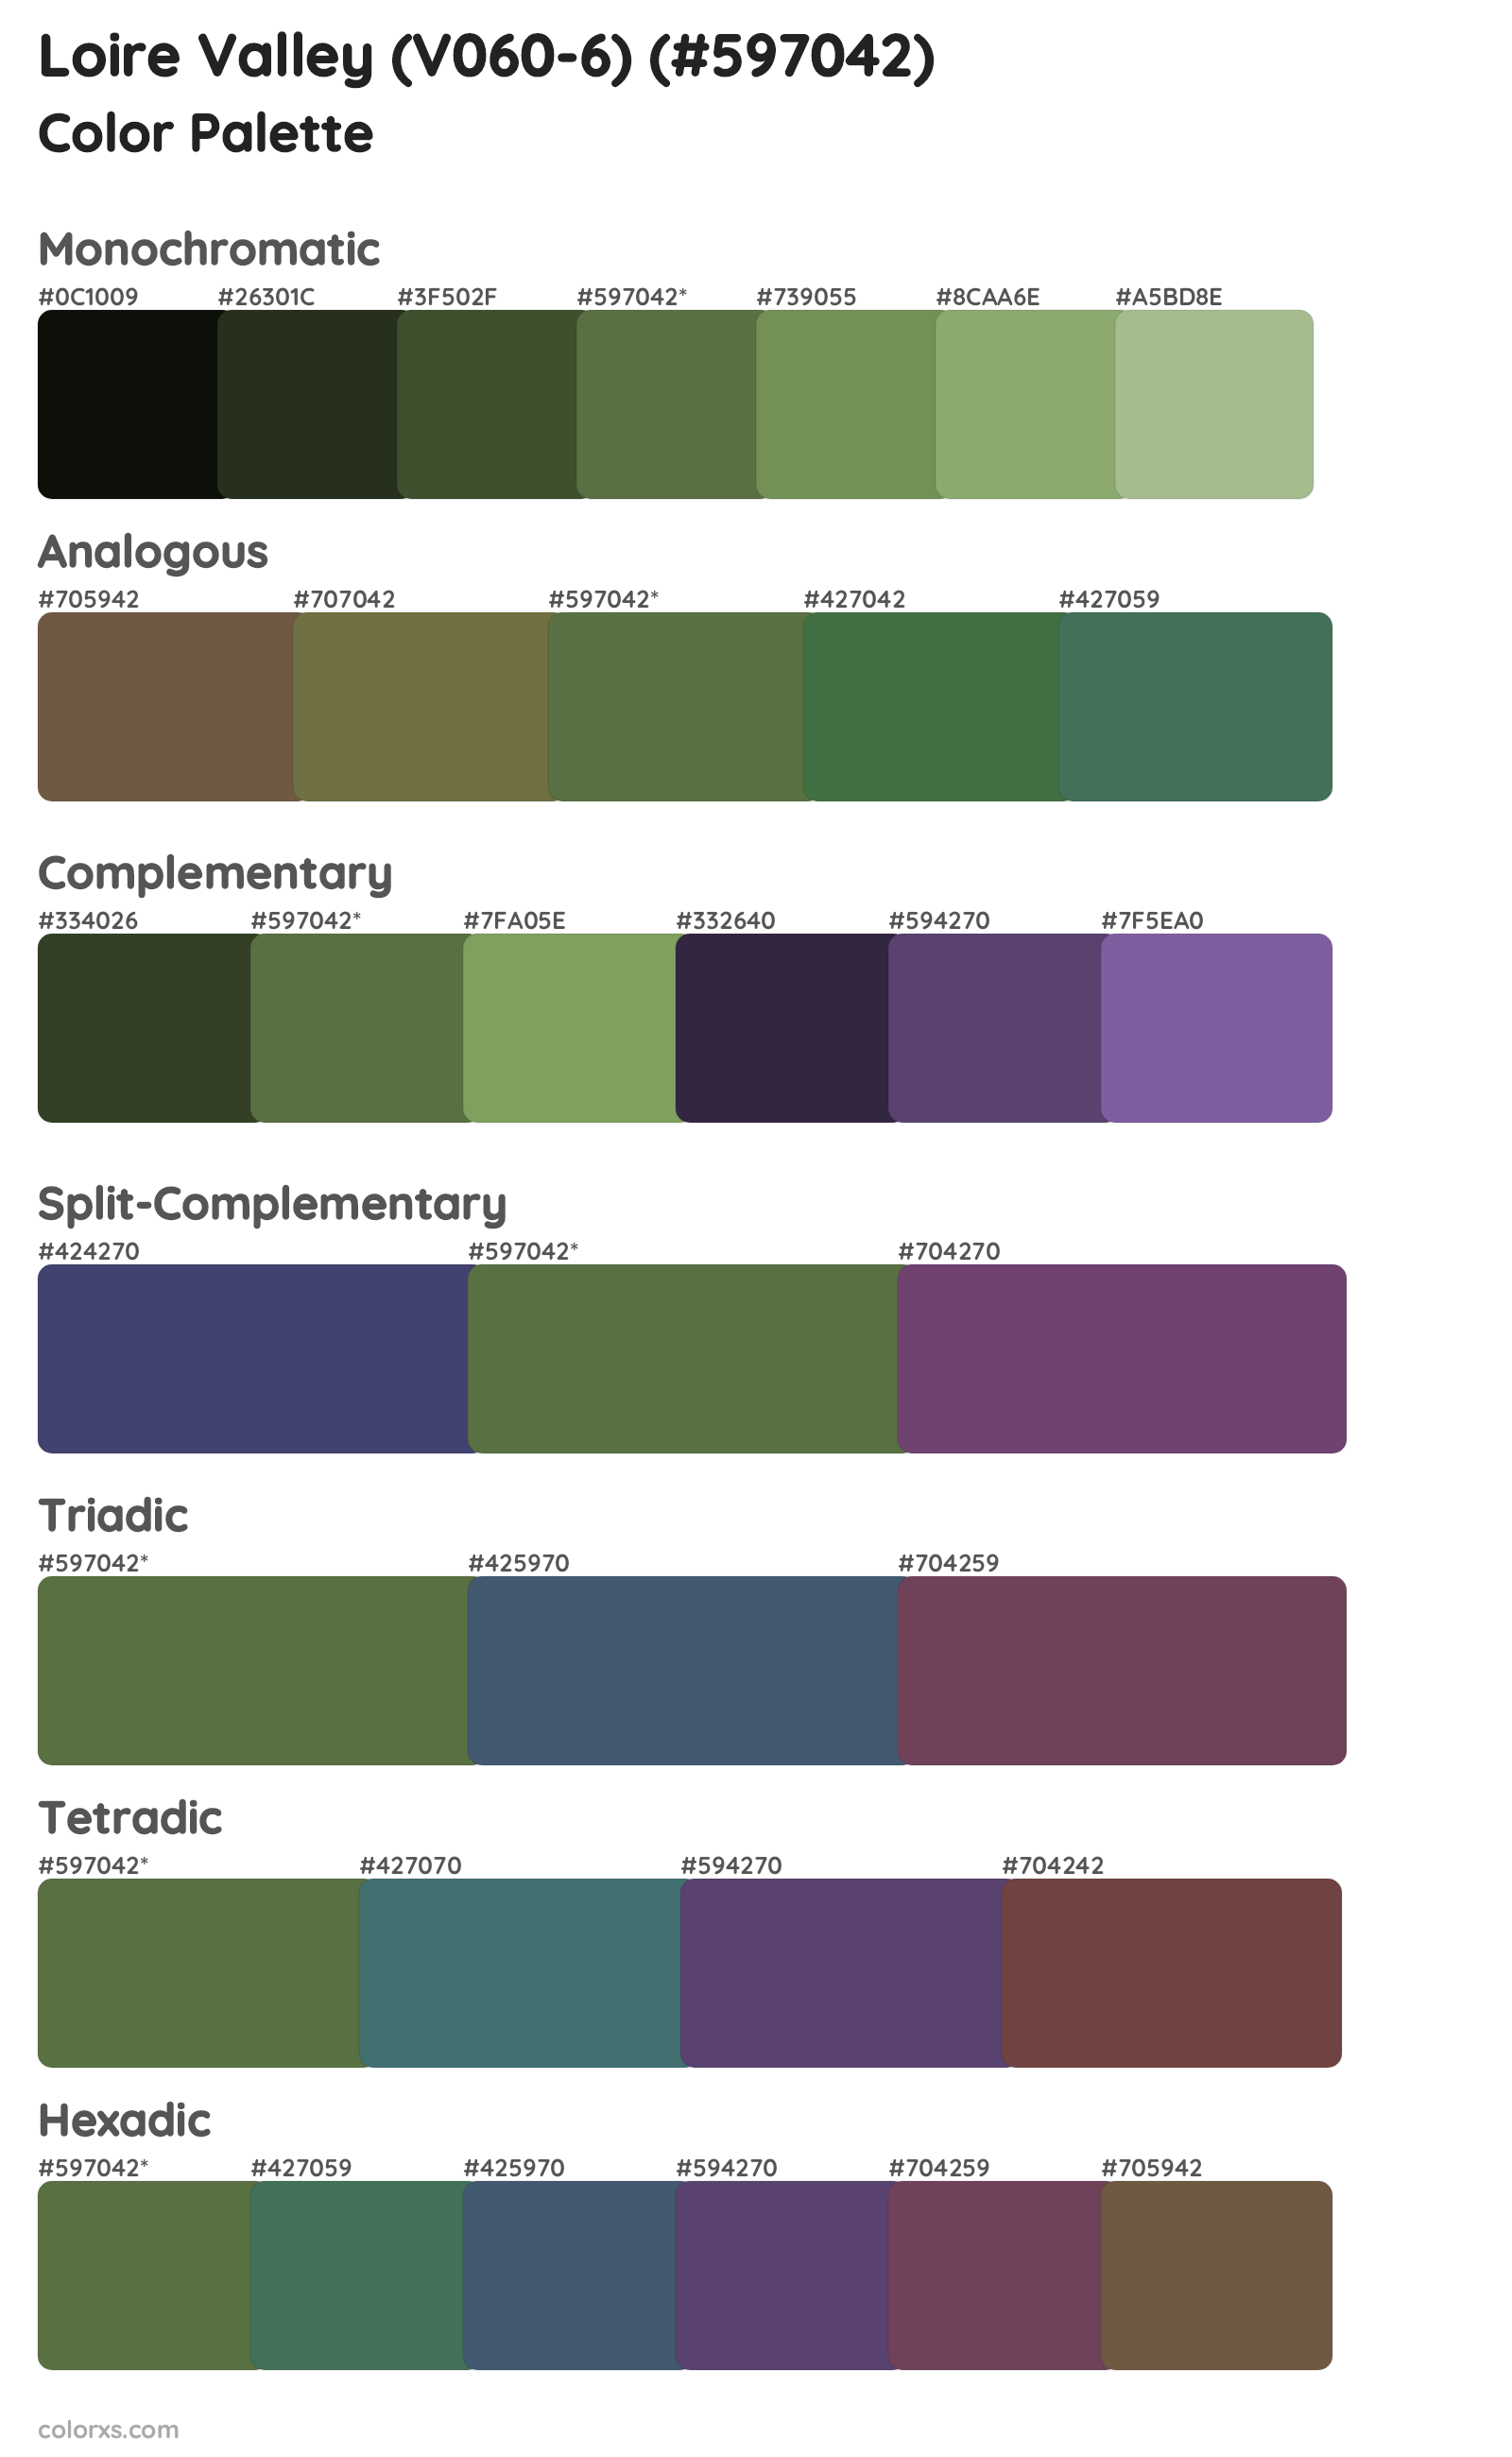 Loire Valley (V060-6) Color Scheme Palettes